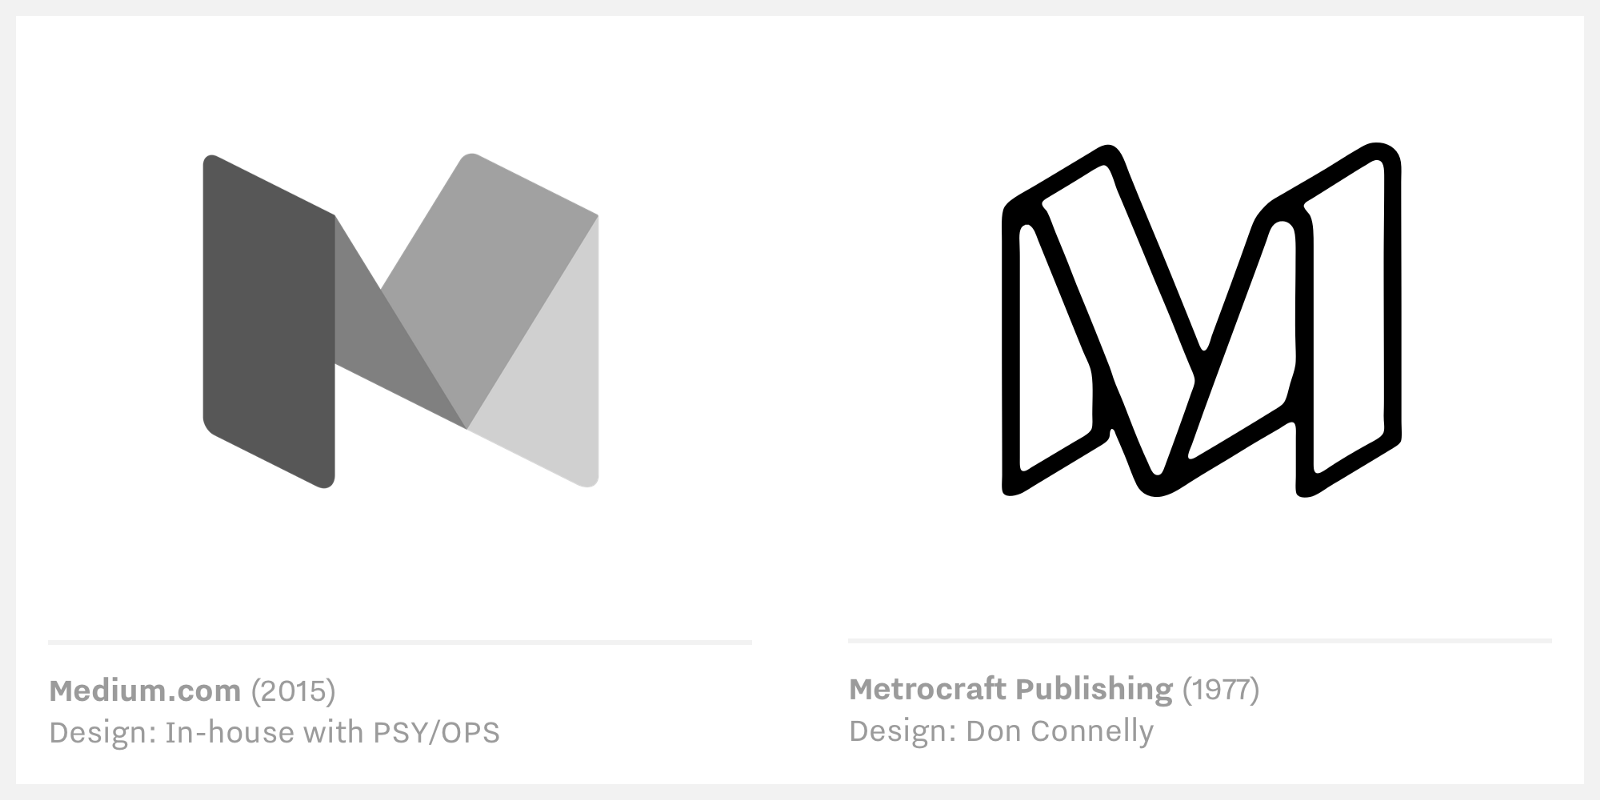 Medium vs Metrocraft Publishing